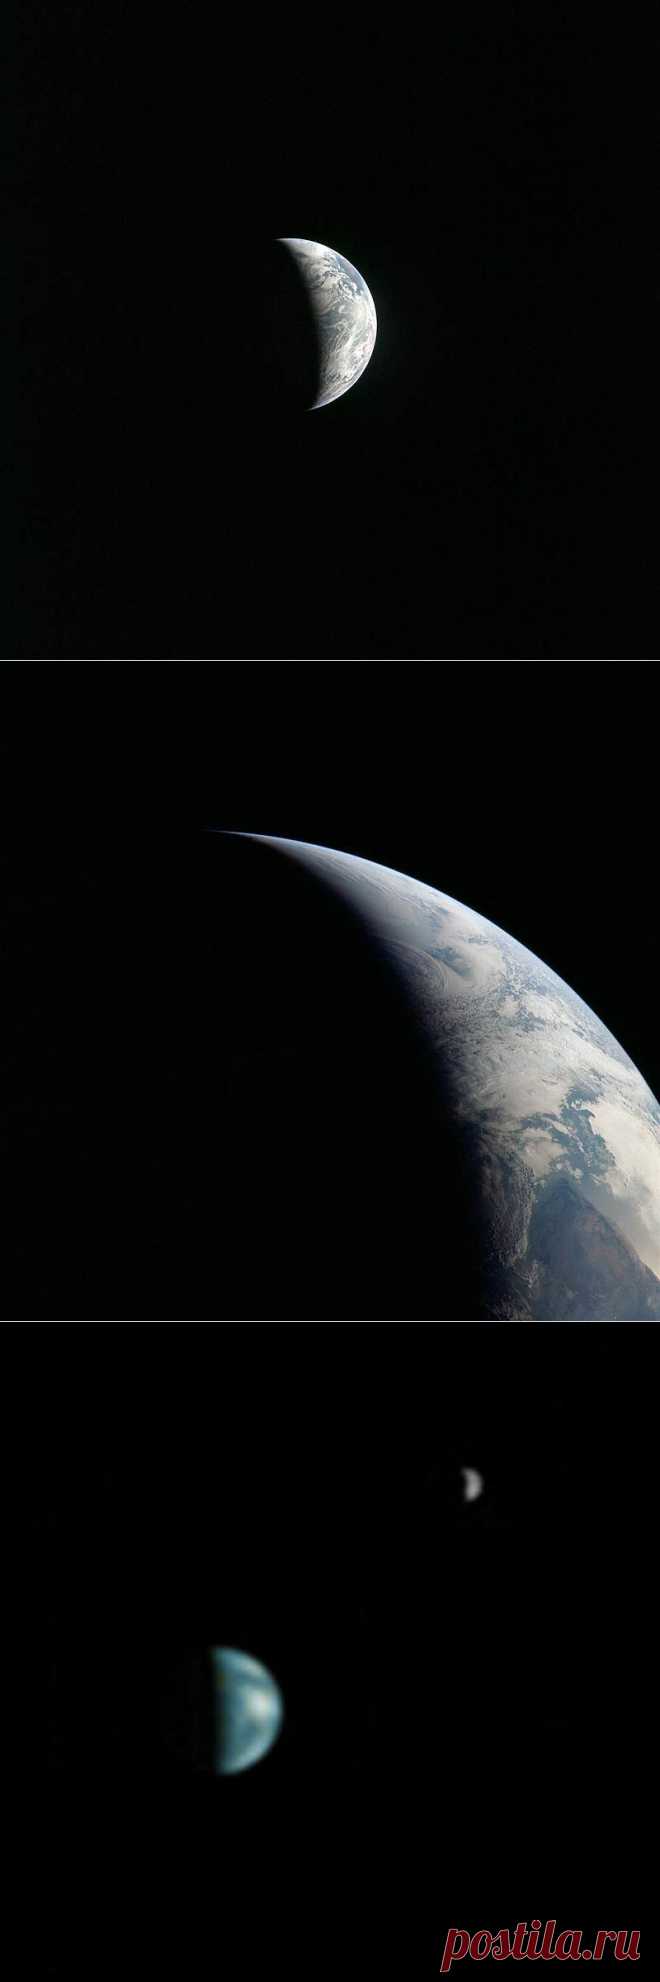 10 видов Земли из космоса • НОВОСТИ В ФОТОГРАФИЯХ